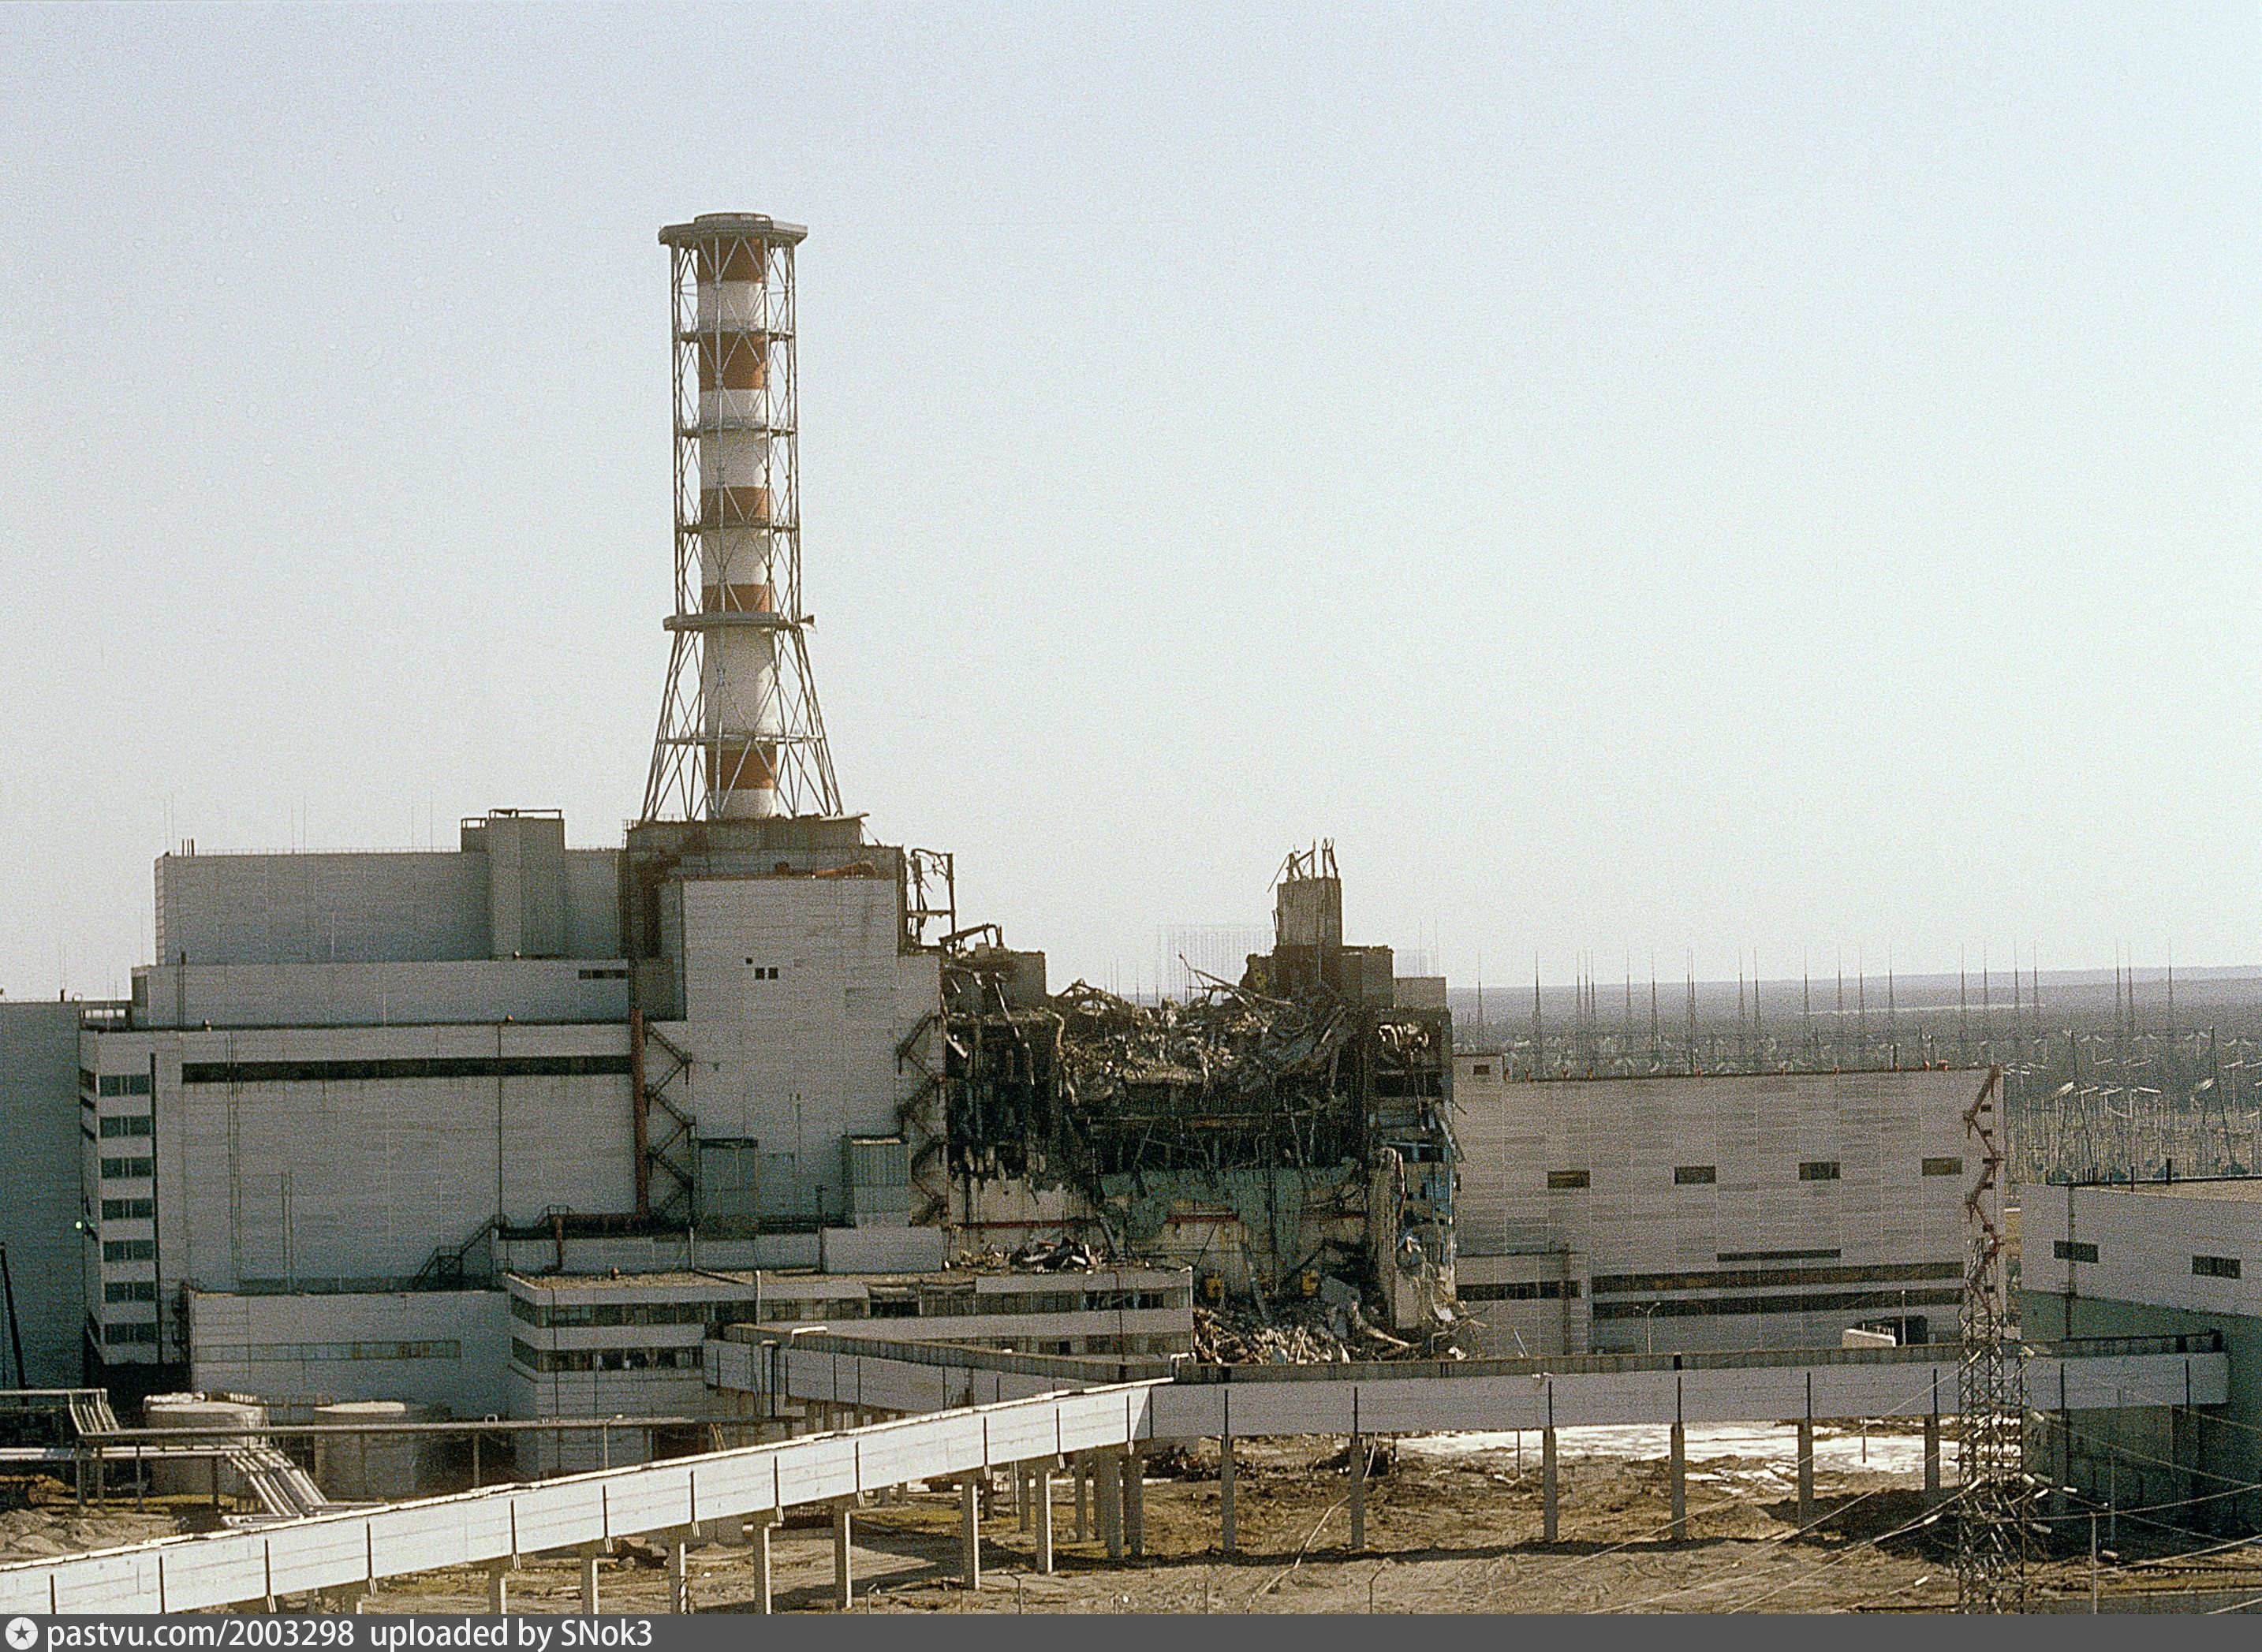 Чернобыльская аэс атомная электростанция. Чернобыльская АЭС 1986. 4 Энергоблок Чернобыльской АЭС 1986. Чернобыль АЭС до аварии 1986. Атомная электростанция Чернобыль 4 энергоблок.